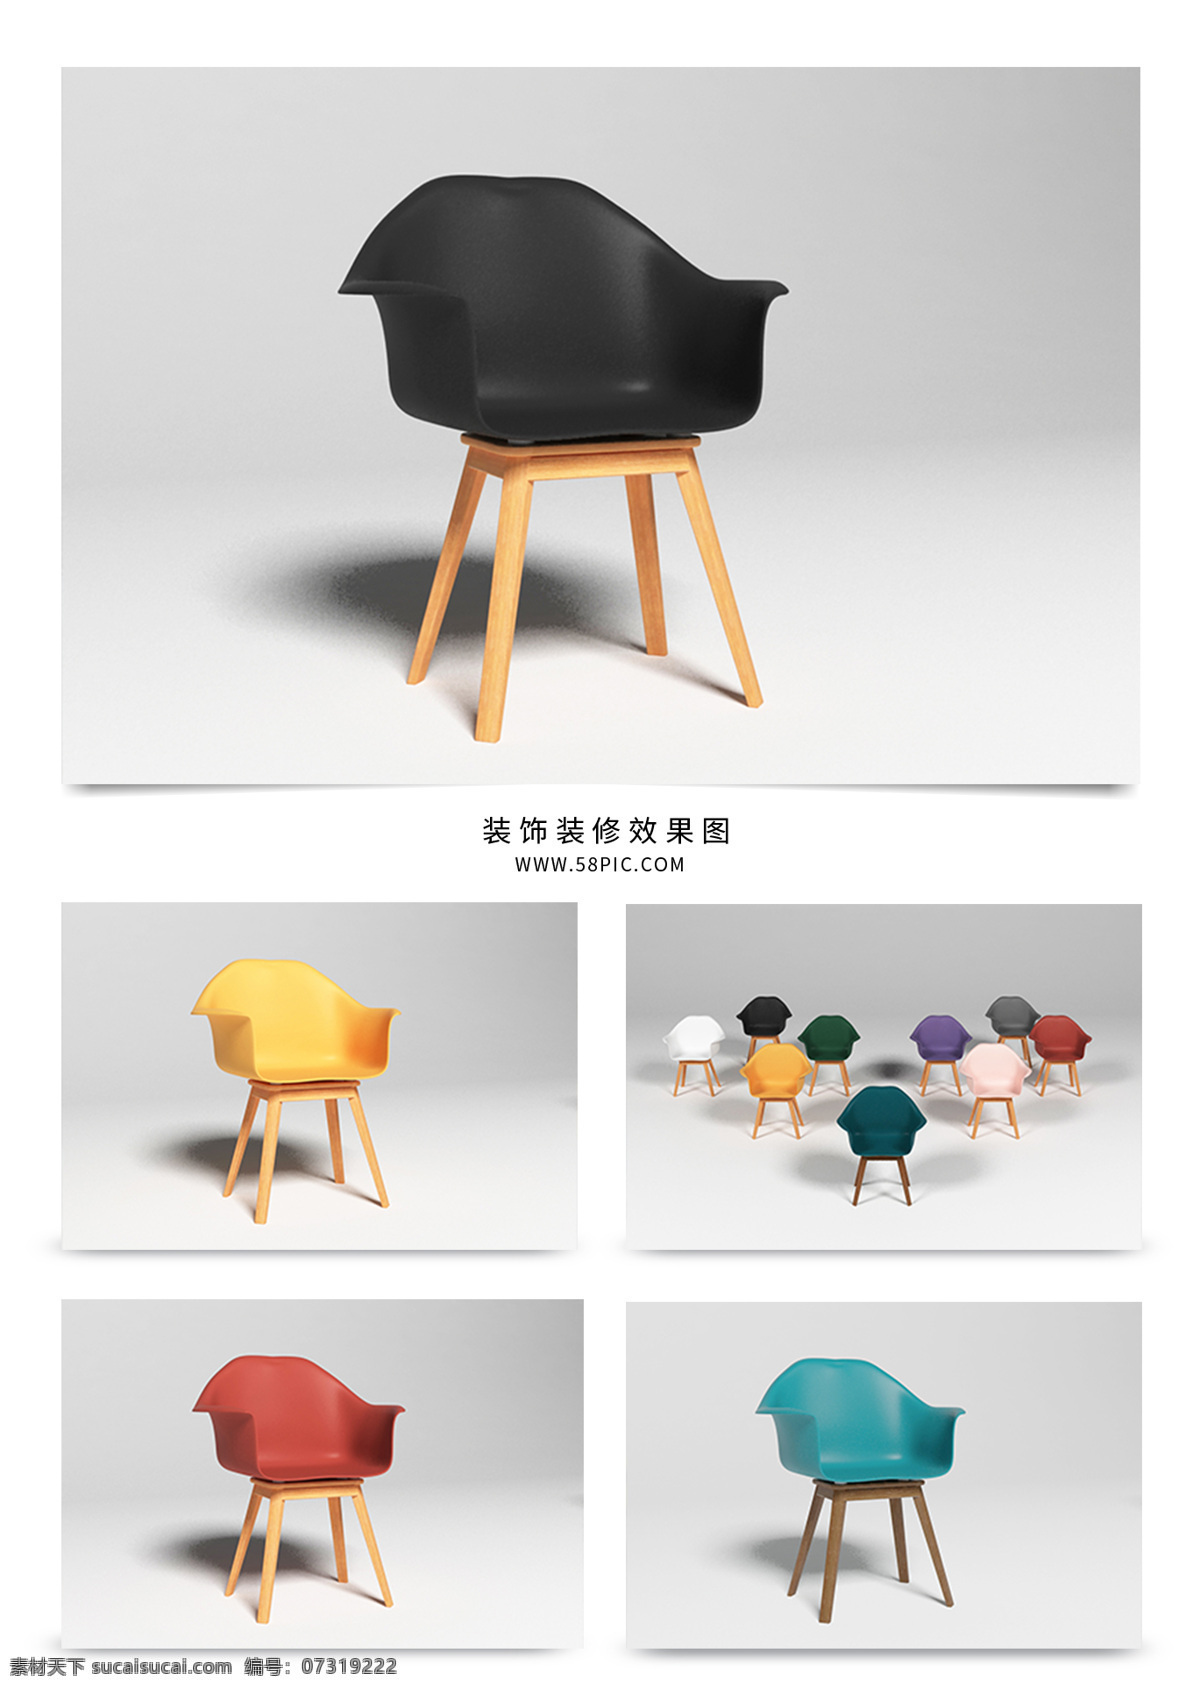 北欧 现代 餐椅 书 桌椅 书桌椅 伊姆斯椅 家具 椅子 家具设计 有机形态 工业设计 产品设计 玻璃纤维 有机复合材料 北欧风家具 现代家具